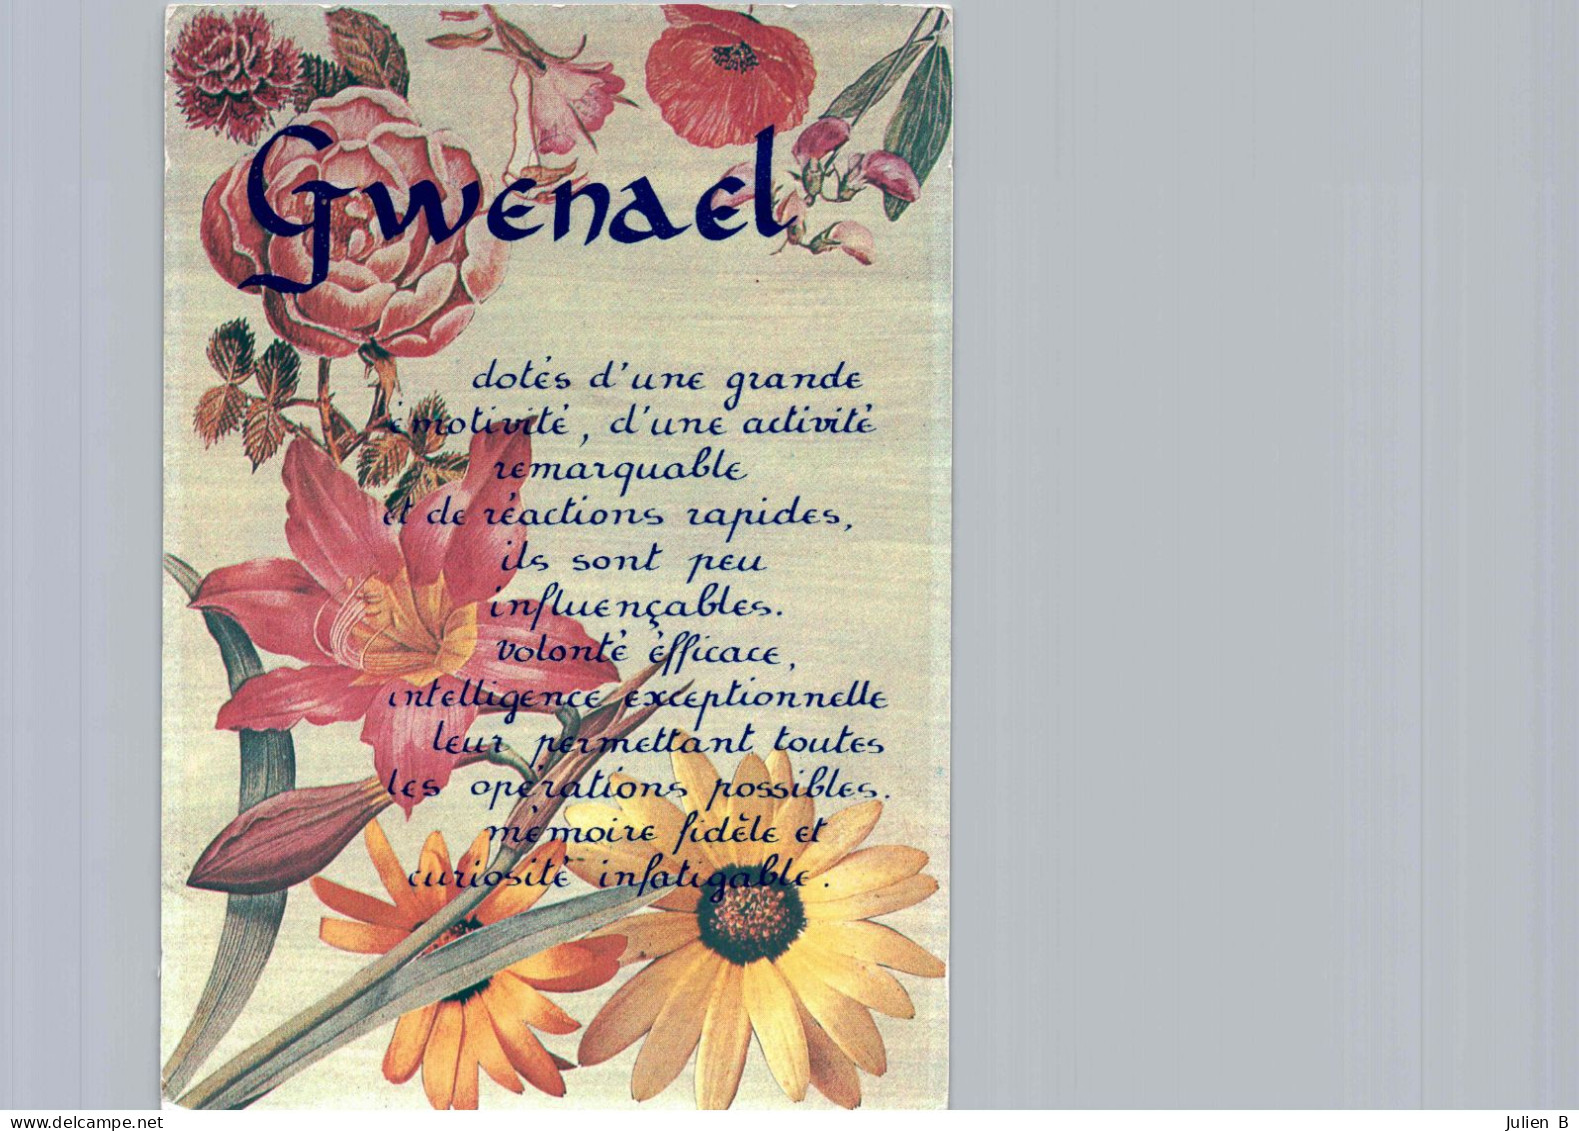 Gwenael, Edition ICDF - Nombres